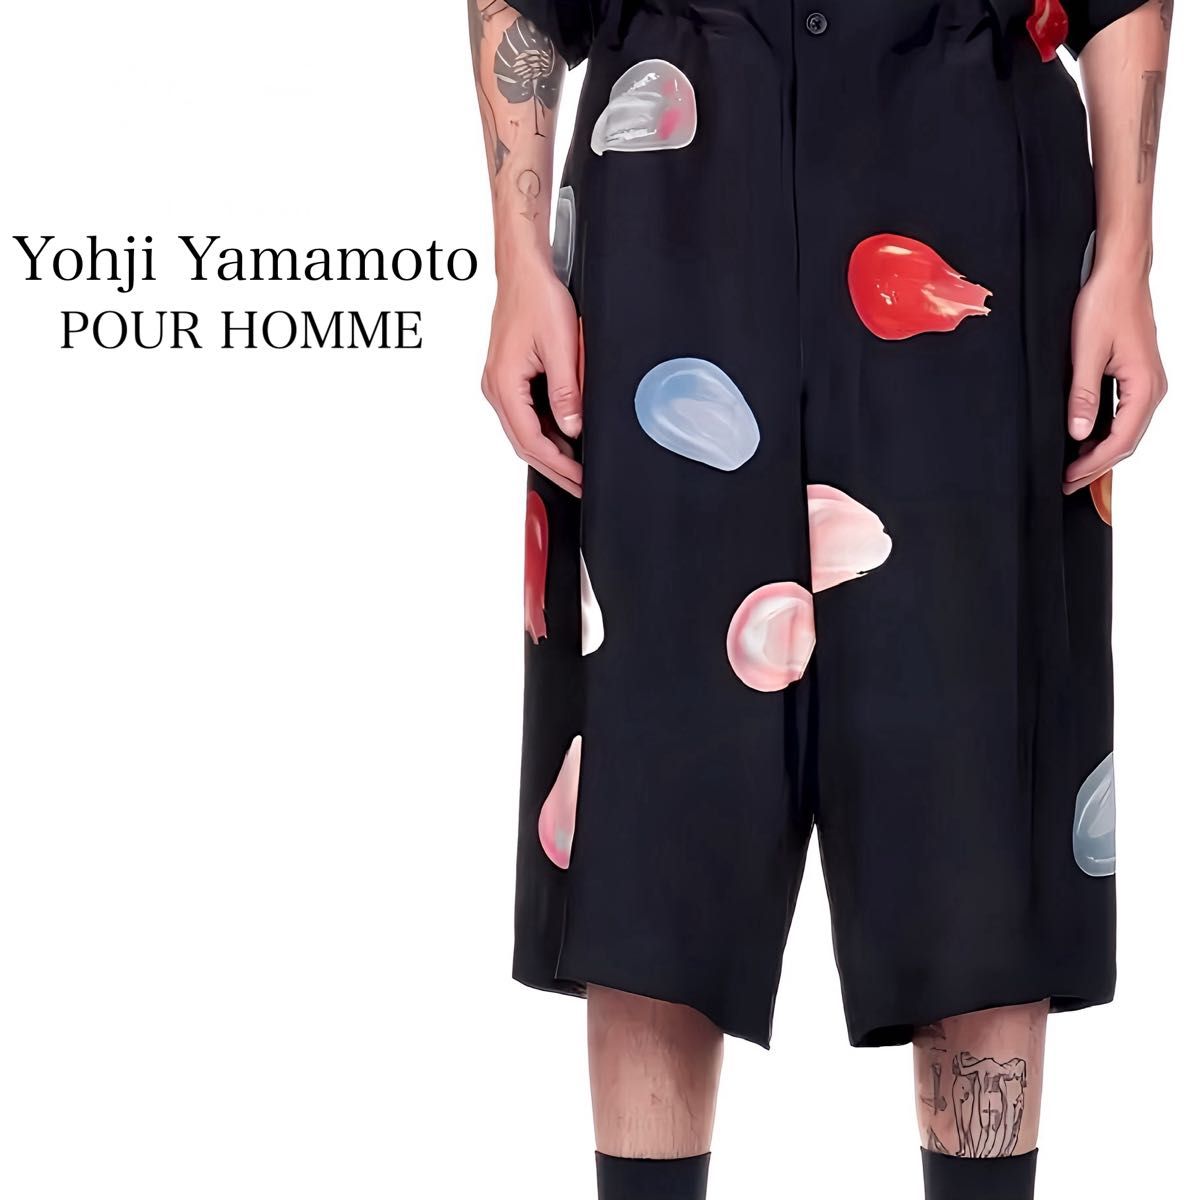 Yohji Yamamoto POUR HOMME ヨウジヤマモト プールオム シルク100% TEARS ハーフパンツ ブラック